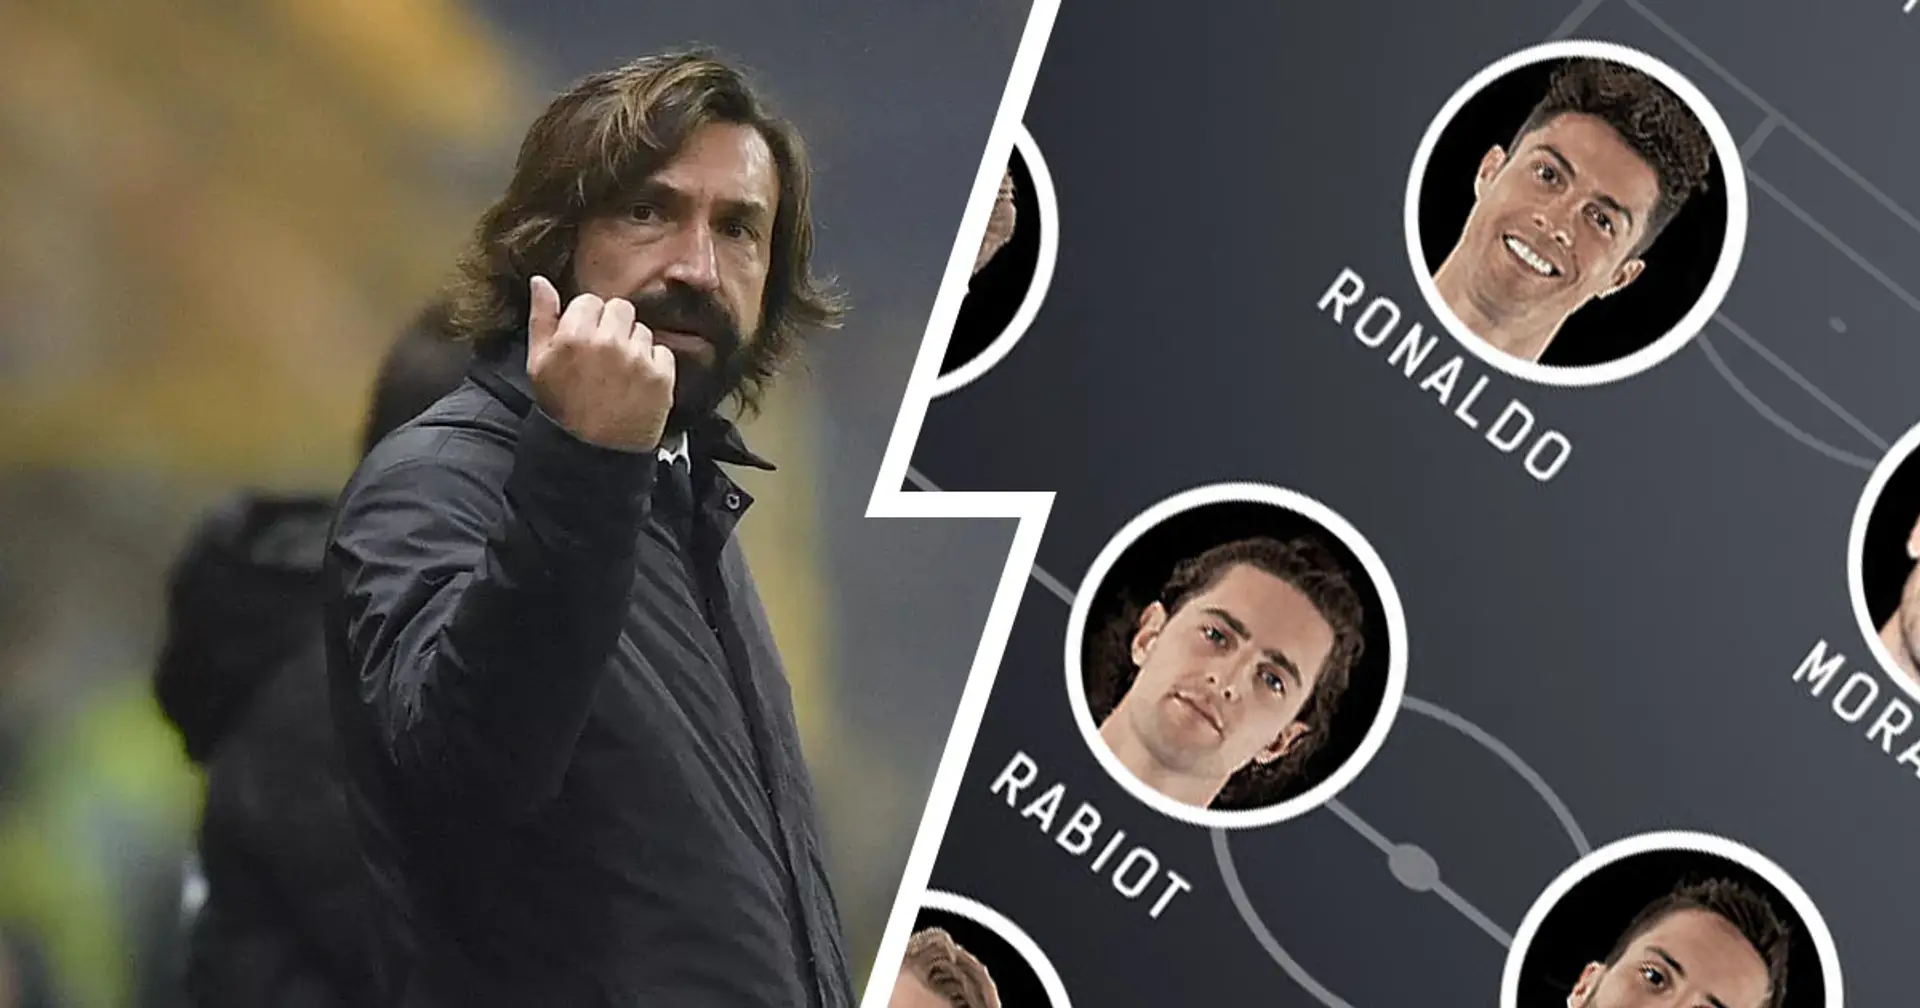 Le probabili formazioni di Juventus-Fiorentina: possibile chance per Rabiot, confermati Ronaldo e Morata